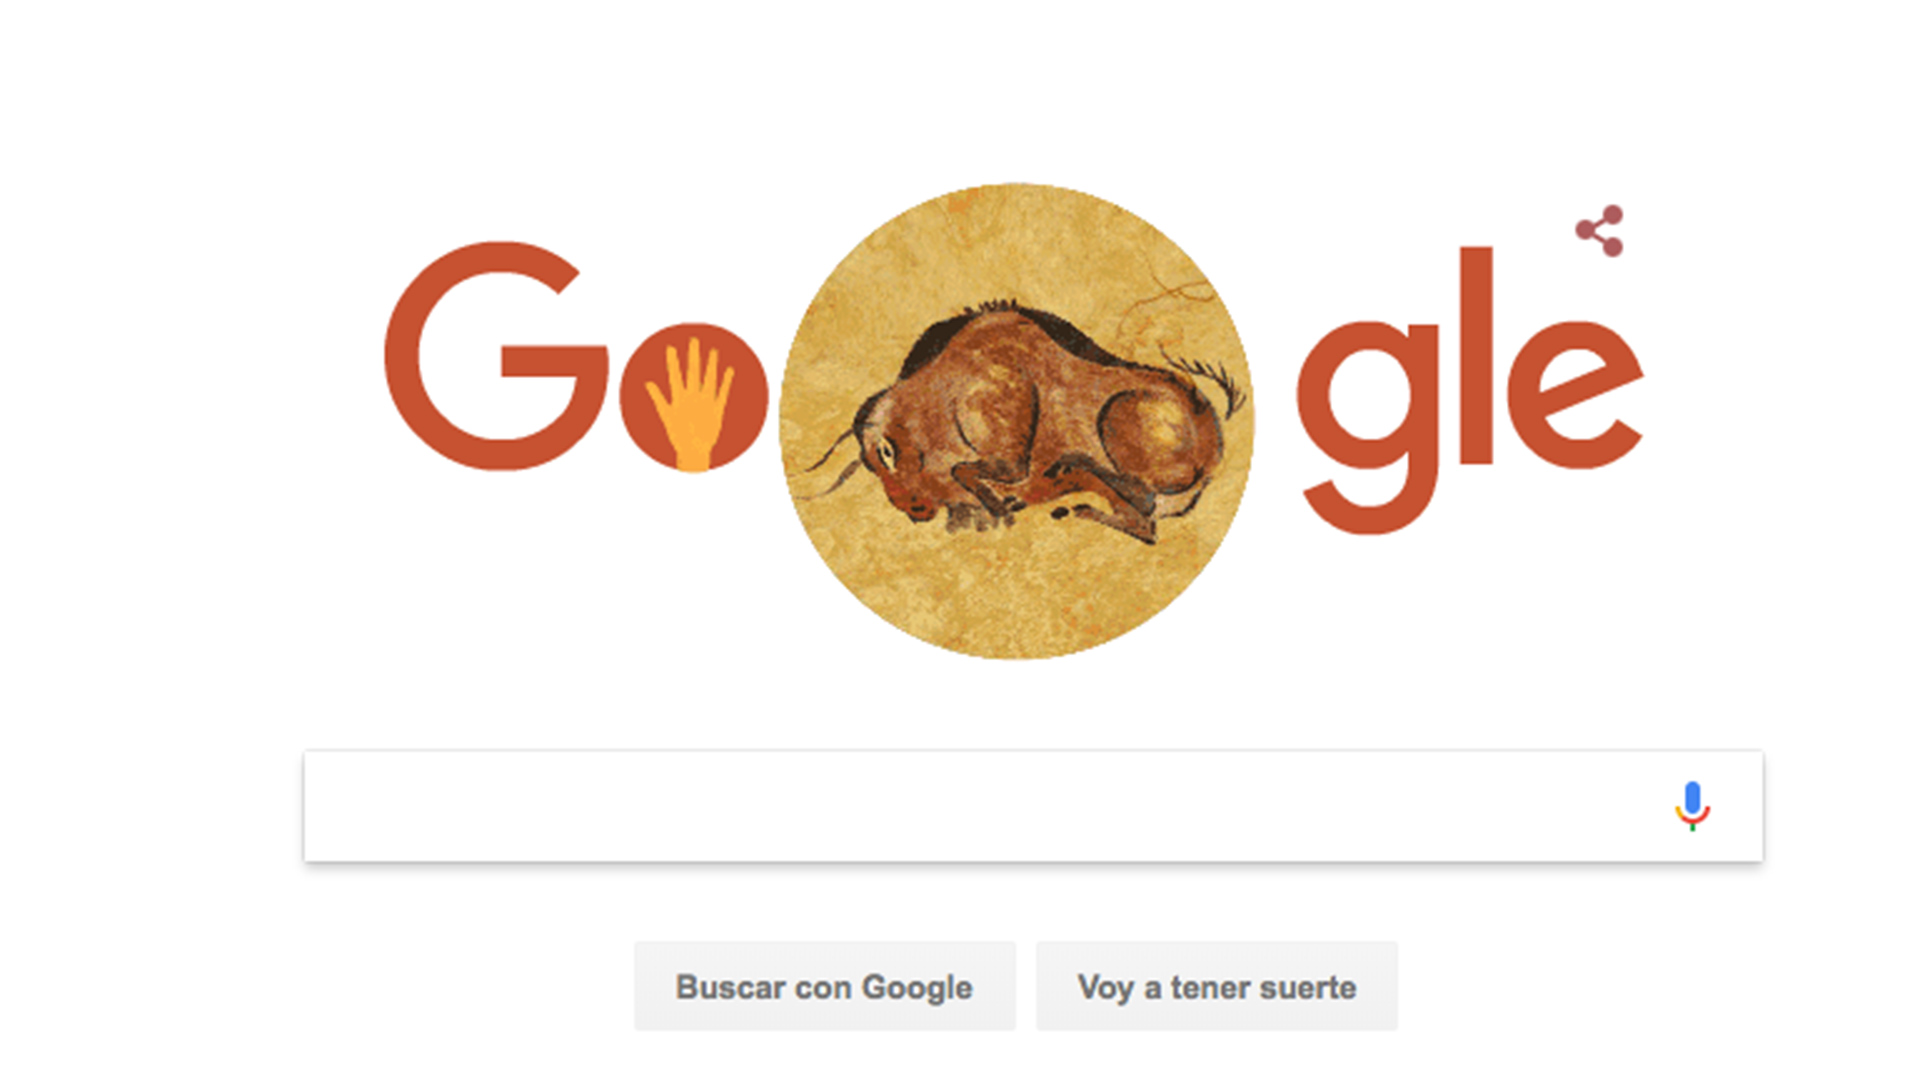 El doodle de Google homenajea hoy a la cueva de Altamira en el 150 aniversario de su descubrimiento